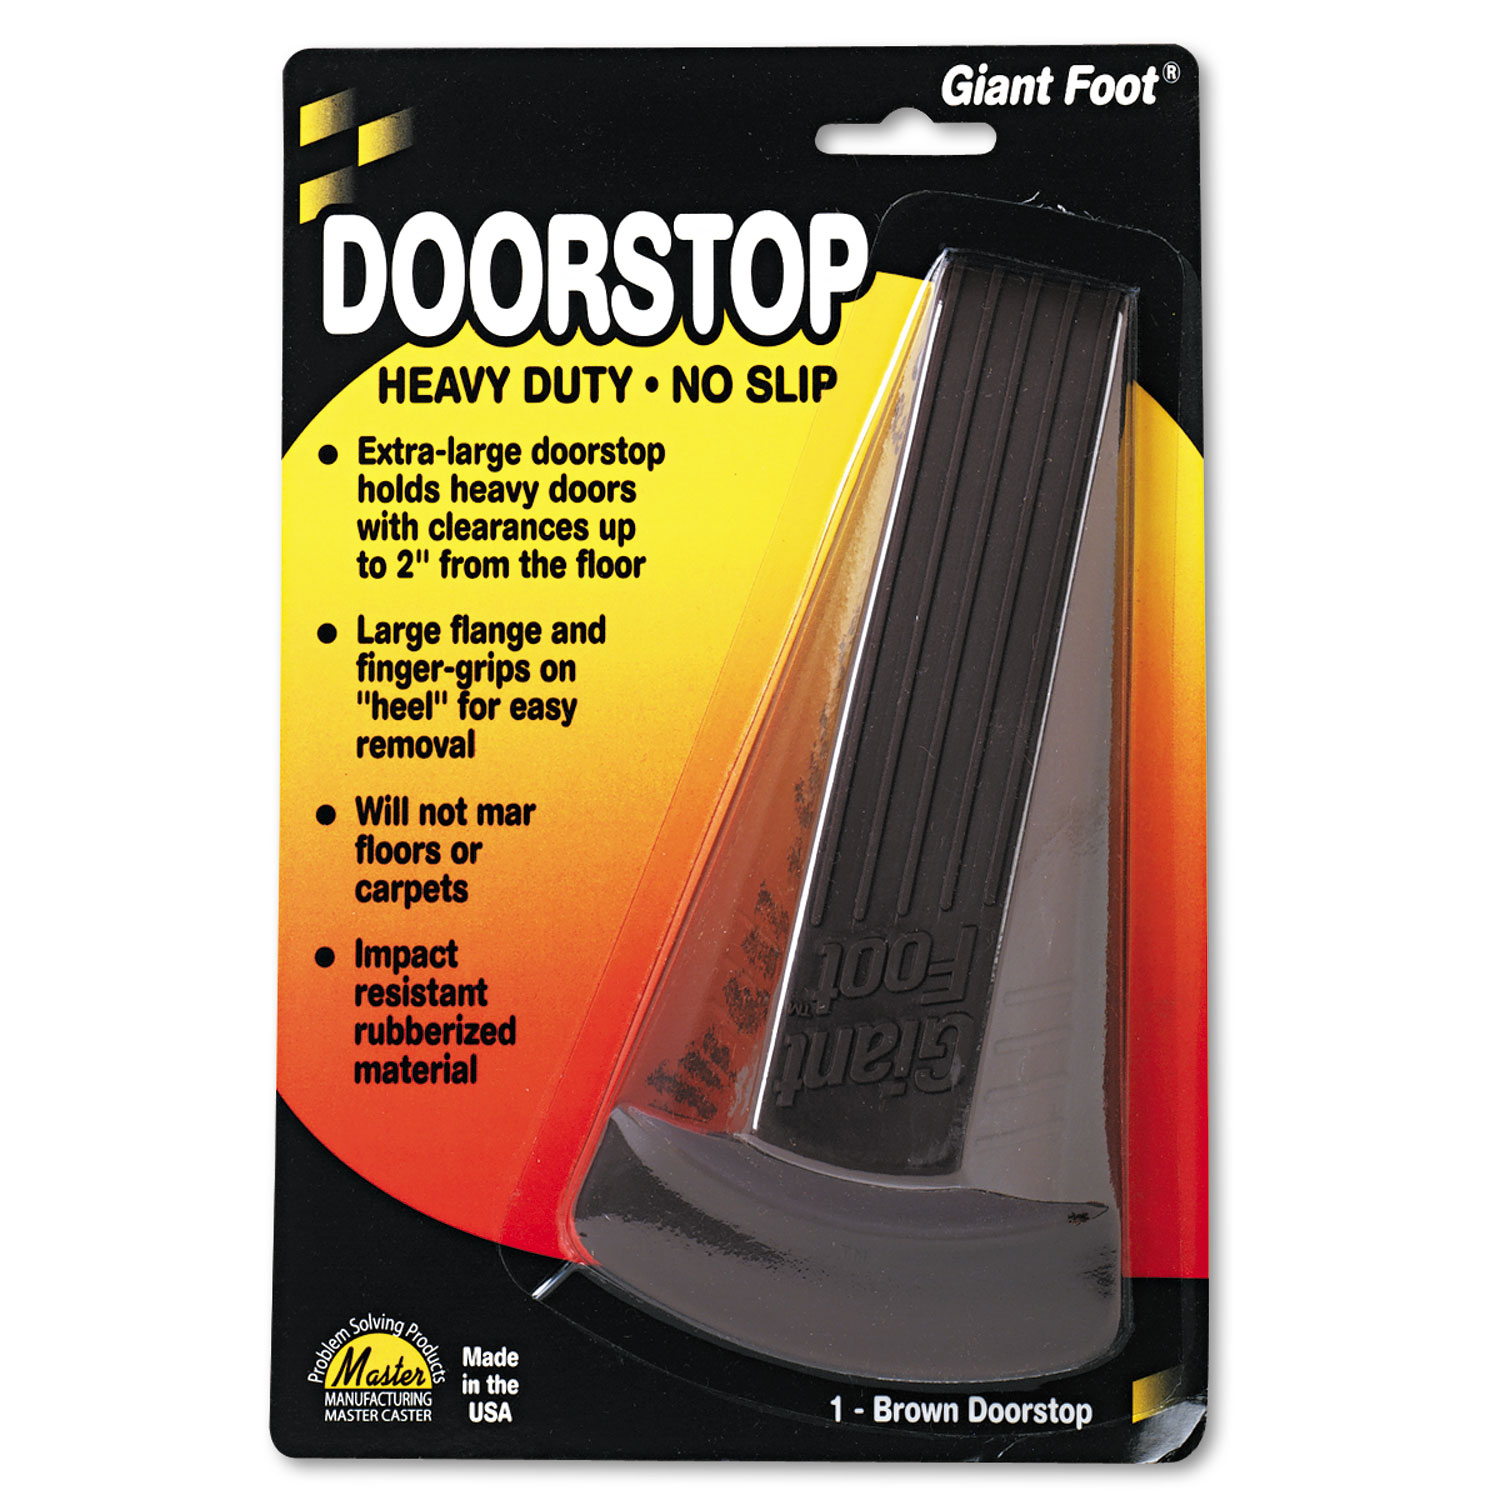 Giant Foot Doorstop, No-Slip Rubber Wedge, 3.5w x 6.75d x 2h, Brown